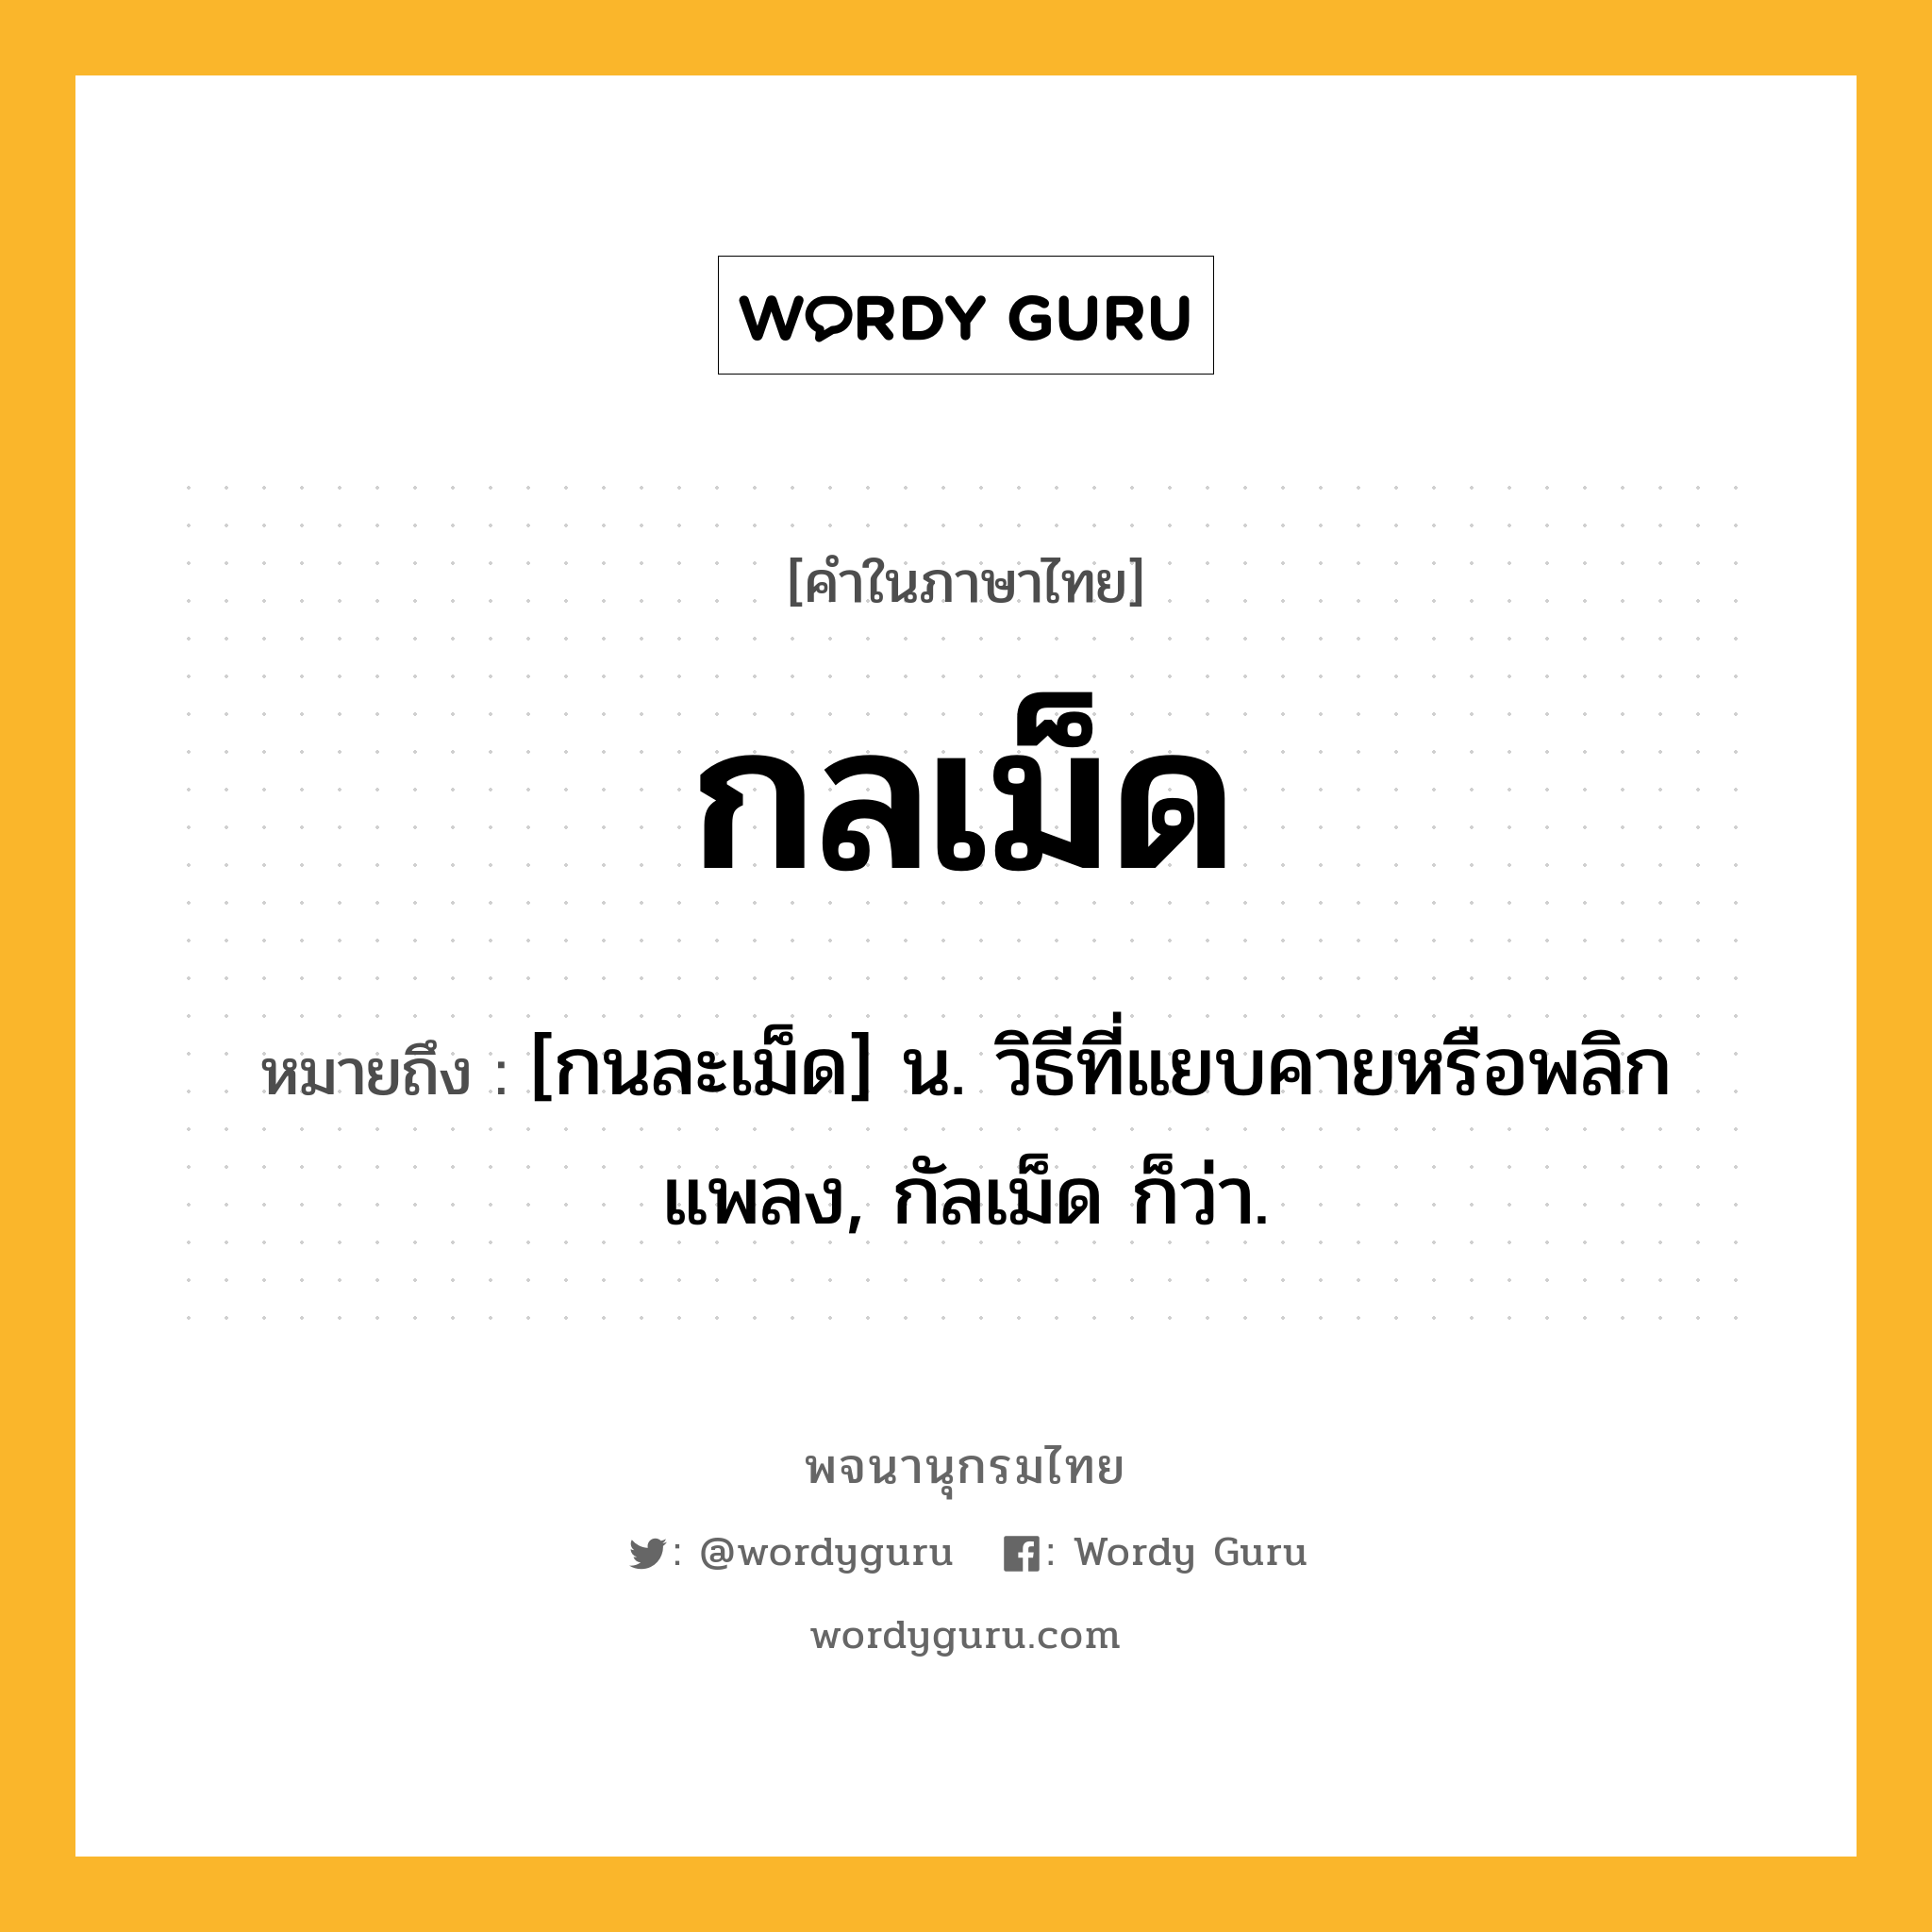 กลเม็ด หมายถึงอะไร?, คำในภาษาไทย กลเม็ด หมายถึง [กนละเม็ด] น. วิธีที่แยบคายหรือพลิกแพลง, กัลเม็ด ก็ว่า.